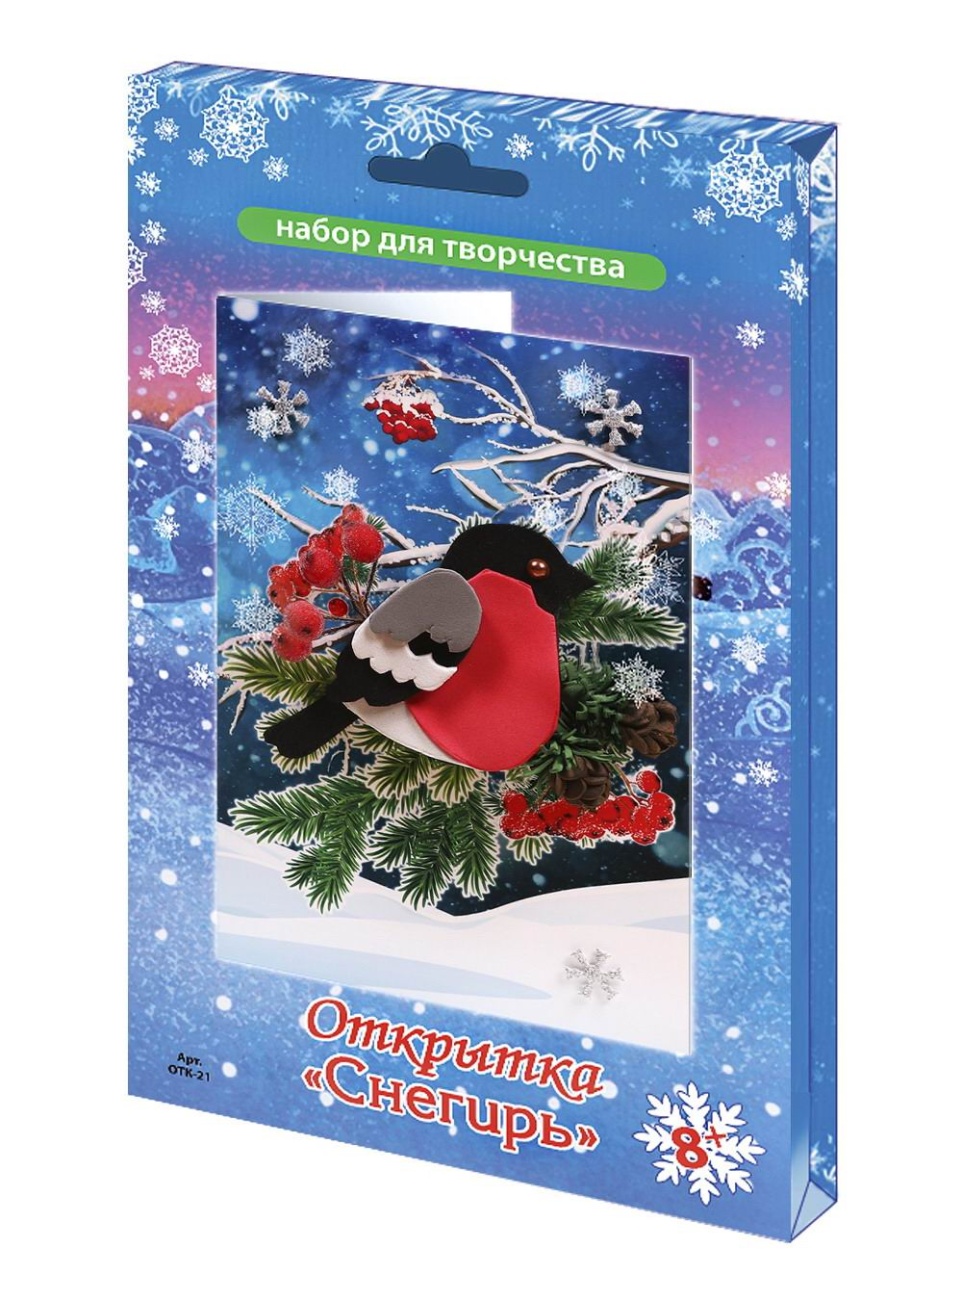 Набор д/творчества Волшебная мастерская открытка Снегирь ОТК-21